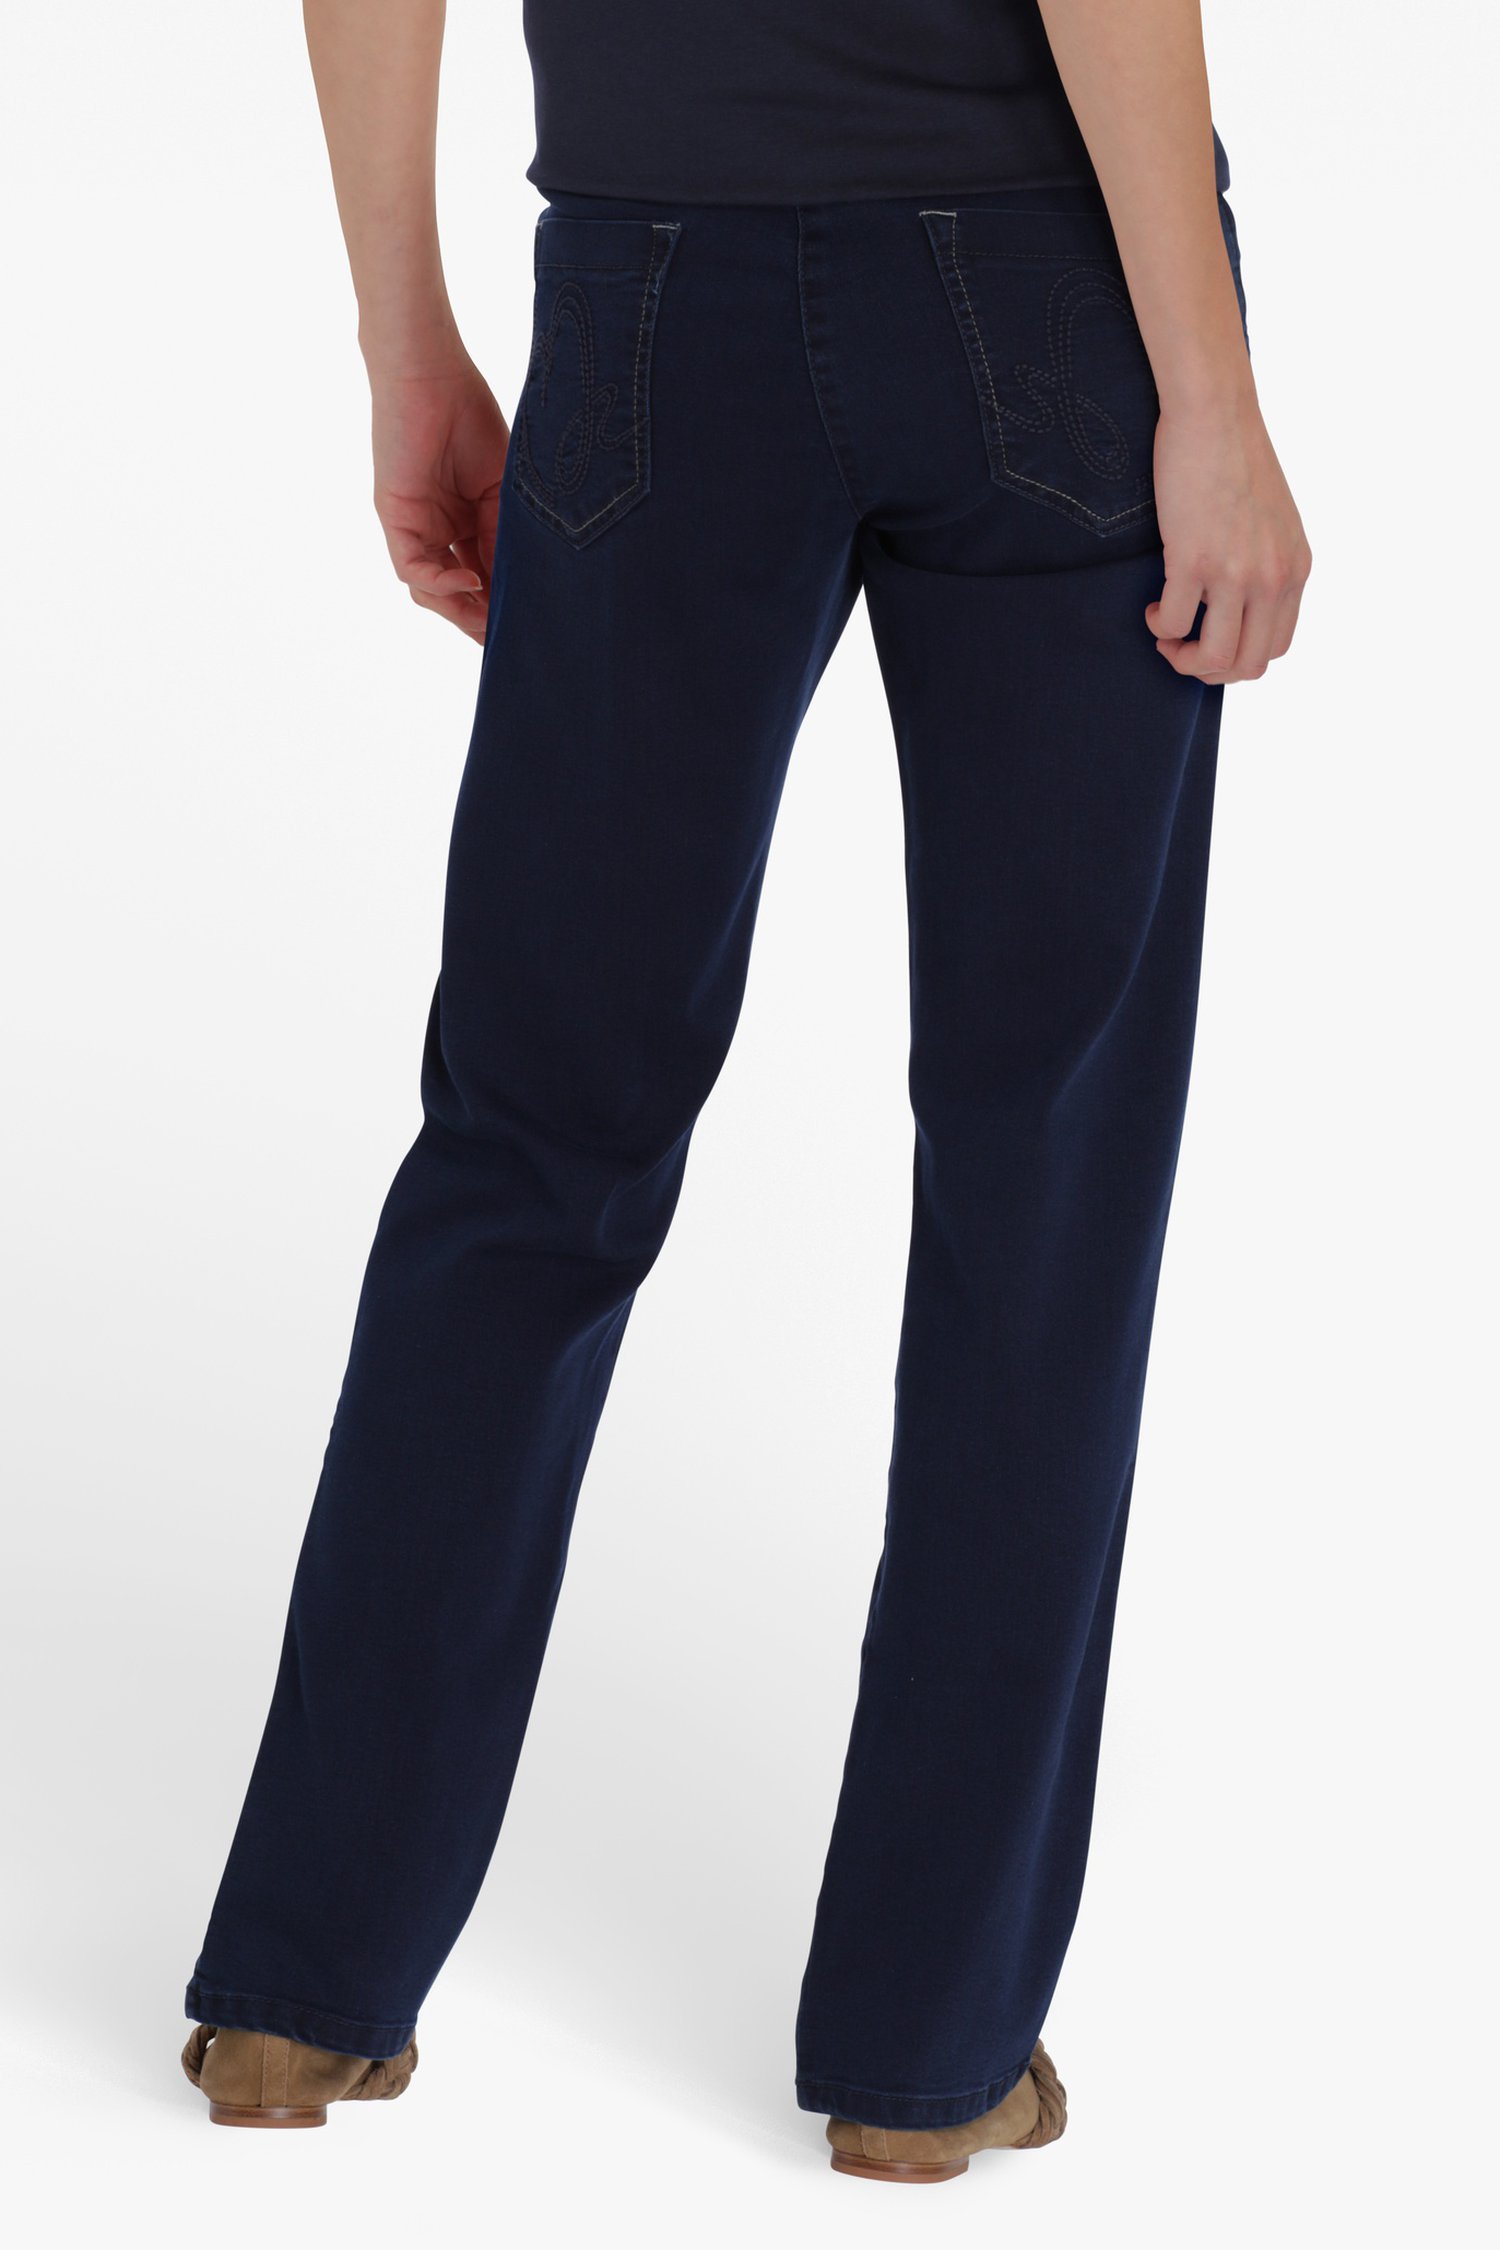 Blauwe jeans met hoge taille - slim fit - L30 van Bicalla voor Dames